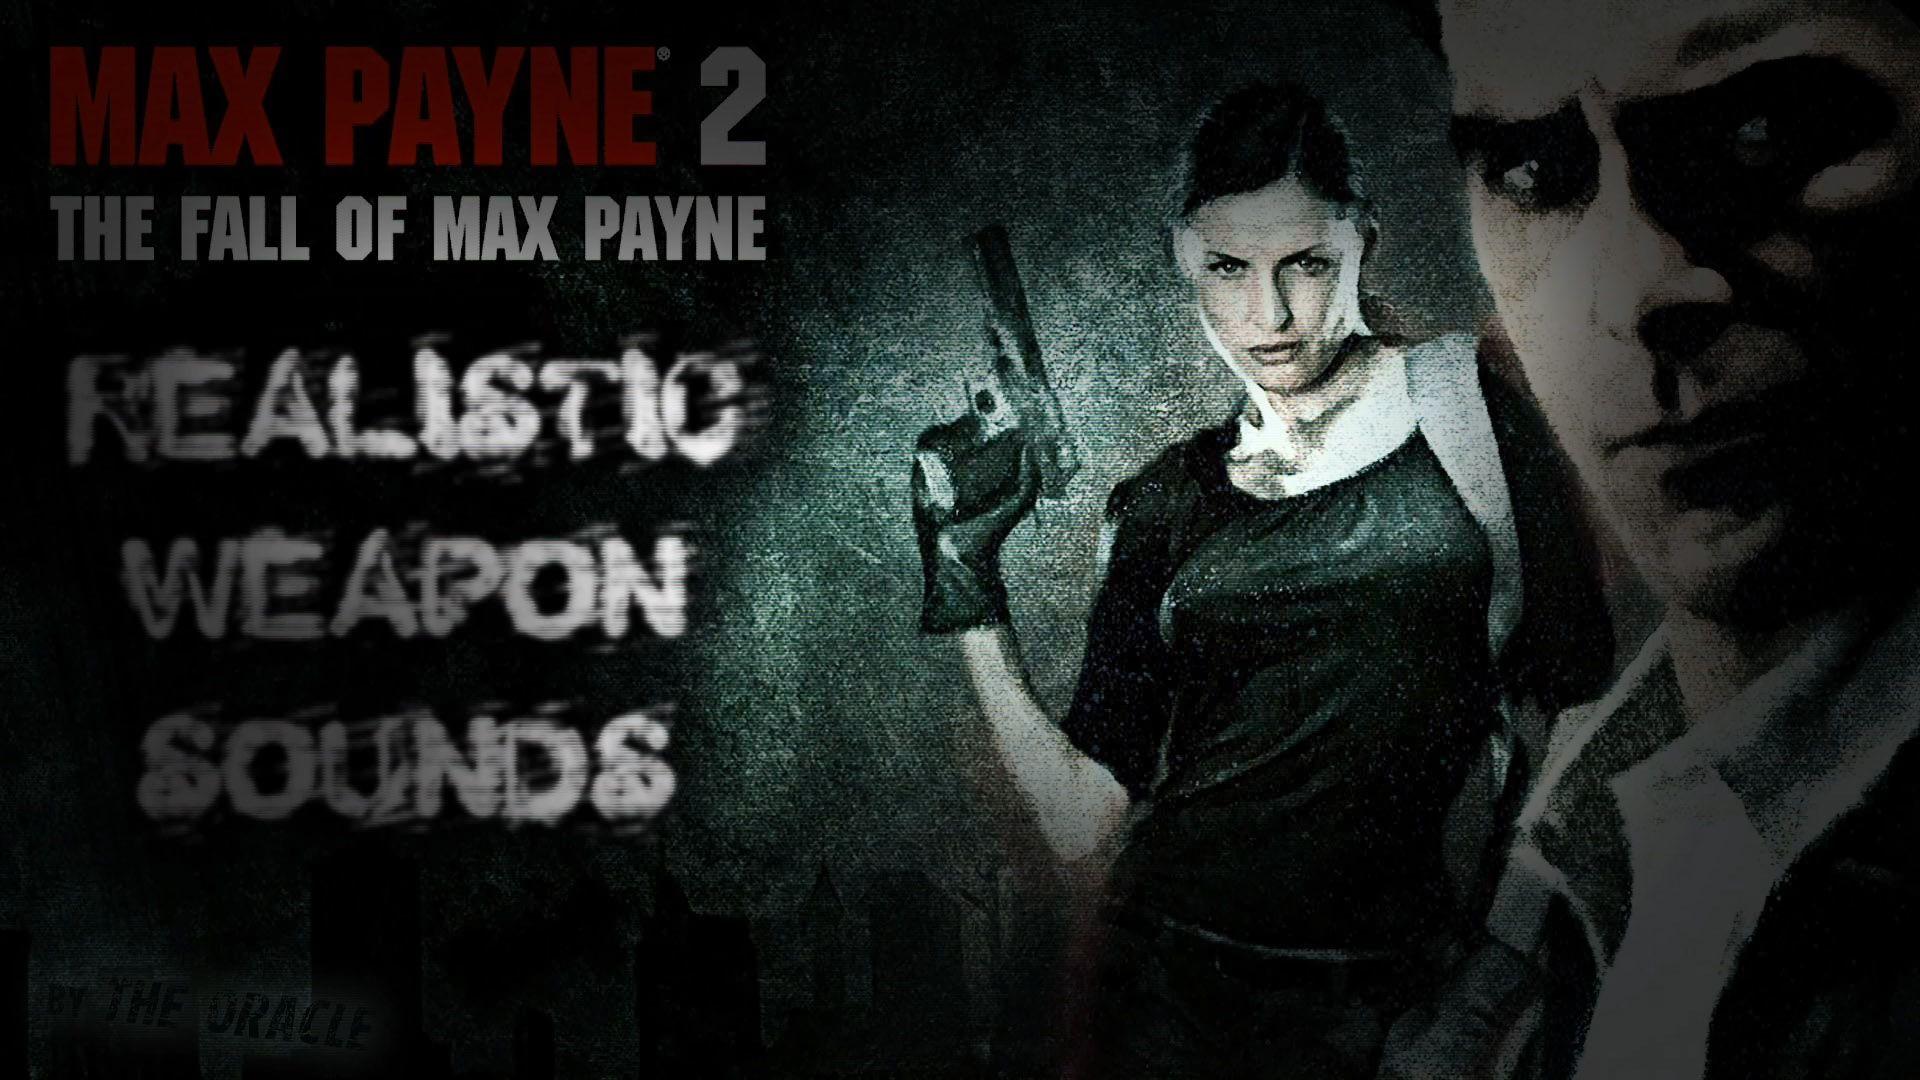 Max Payne 2 Weapon Sounds v1.0 addon